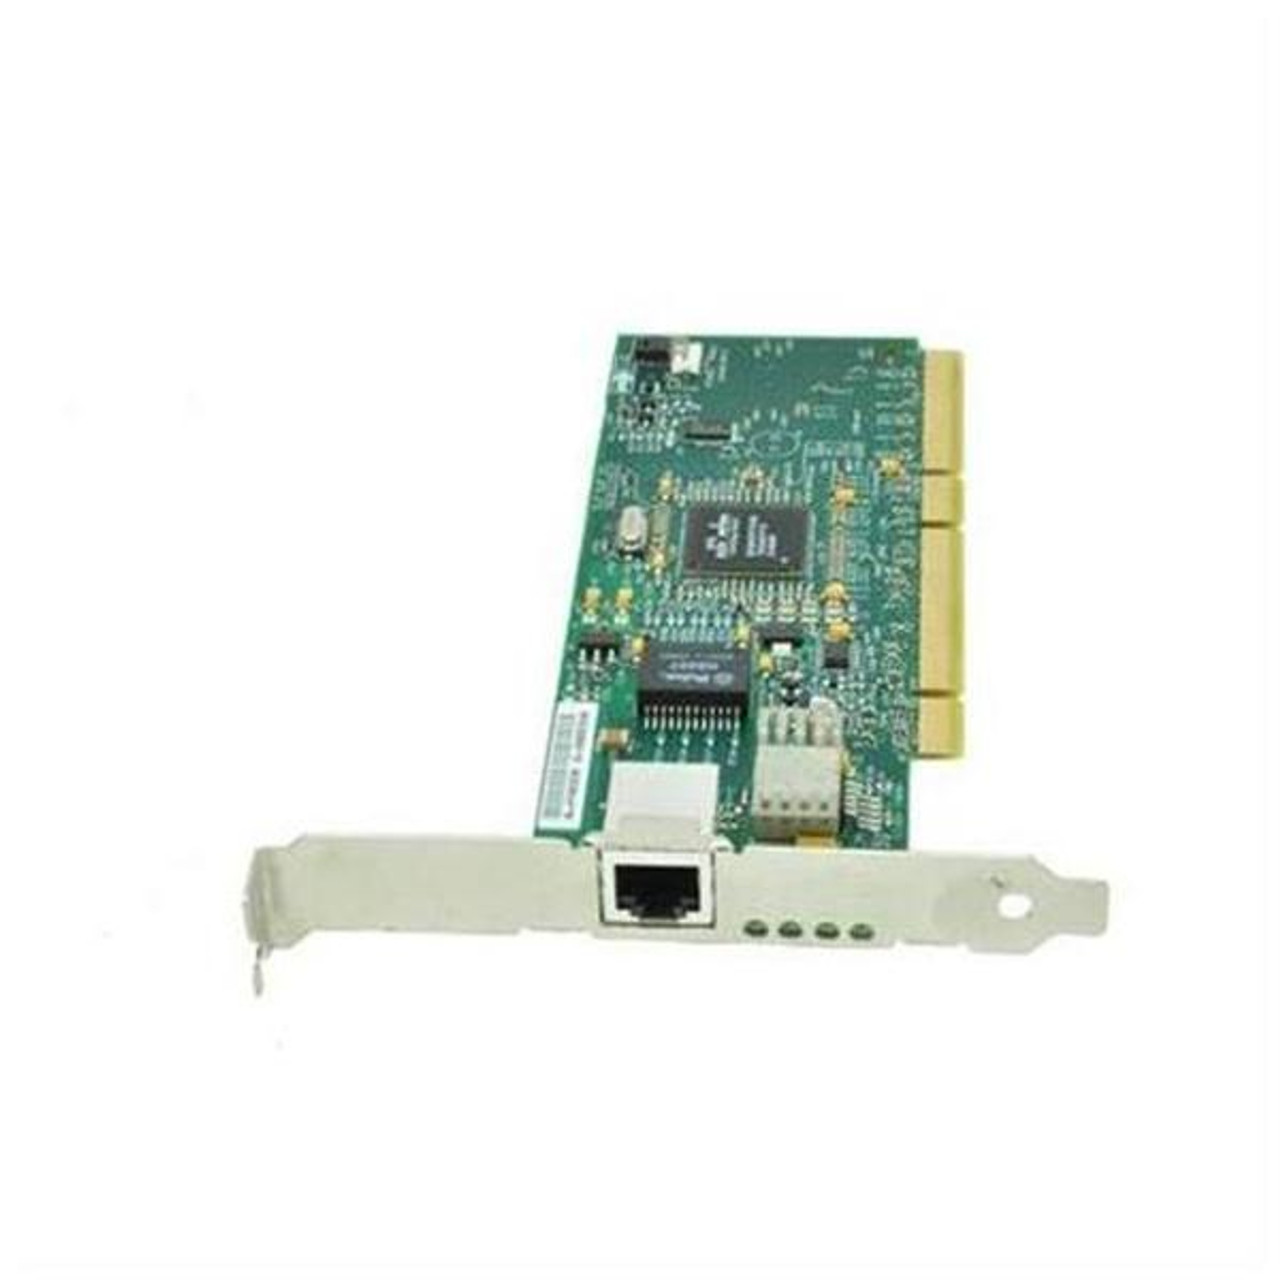 L1N50AV HP Dual Band 867Mbps 2.4GHz / 5GHz IEEE 802.11a/b/g/n Bluetooth 4.0 Mini PCI Express Wireless Network Adapter